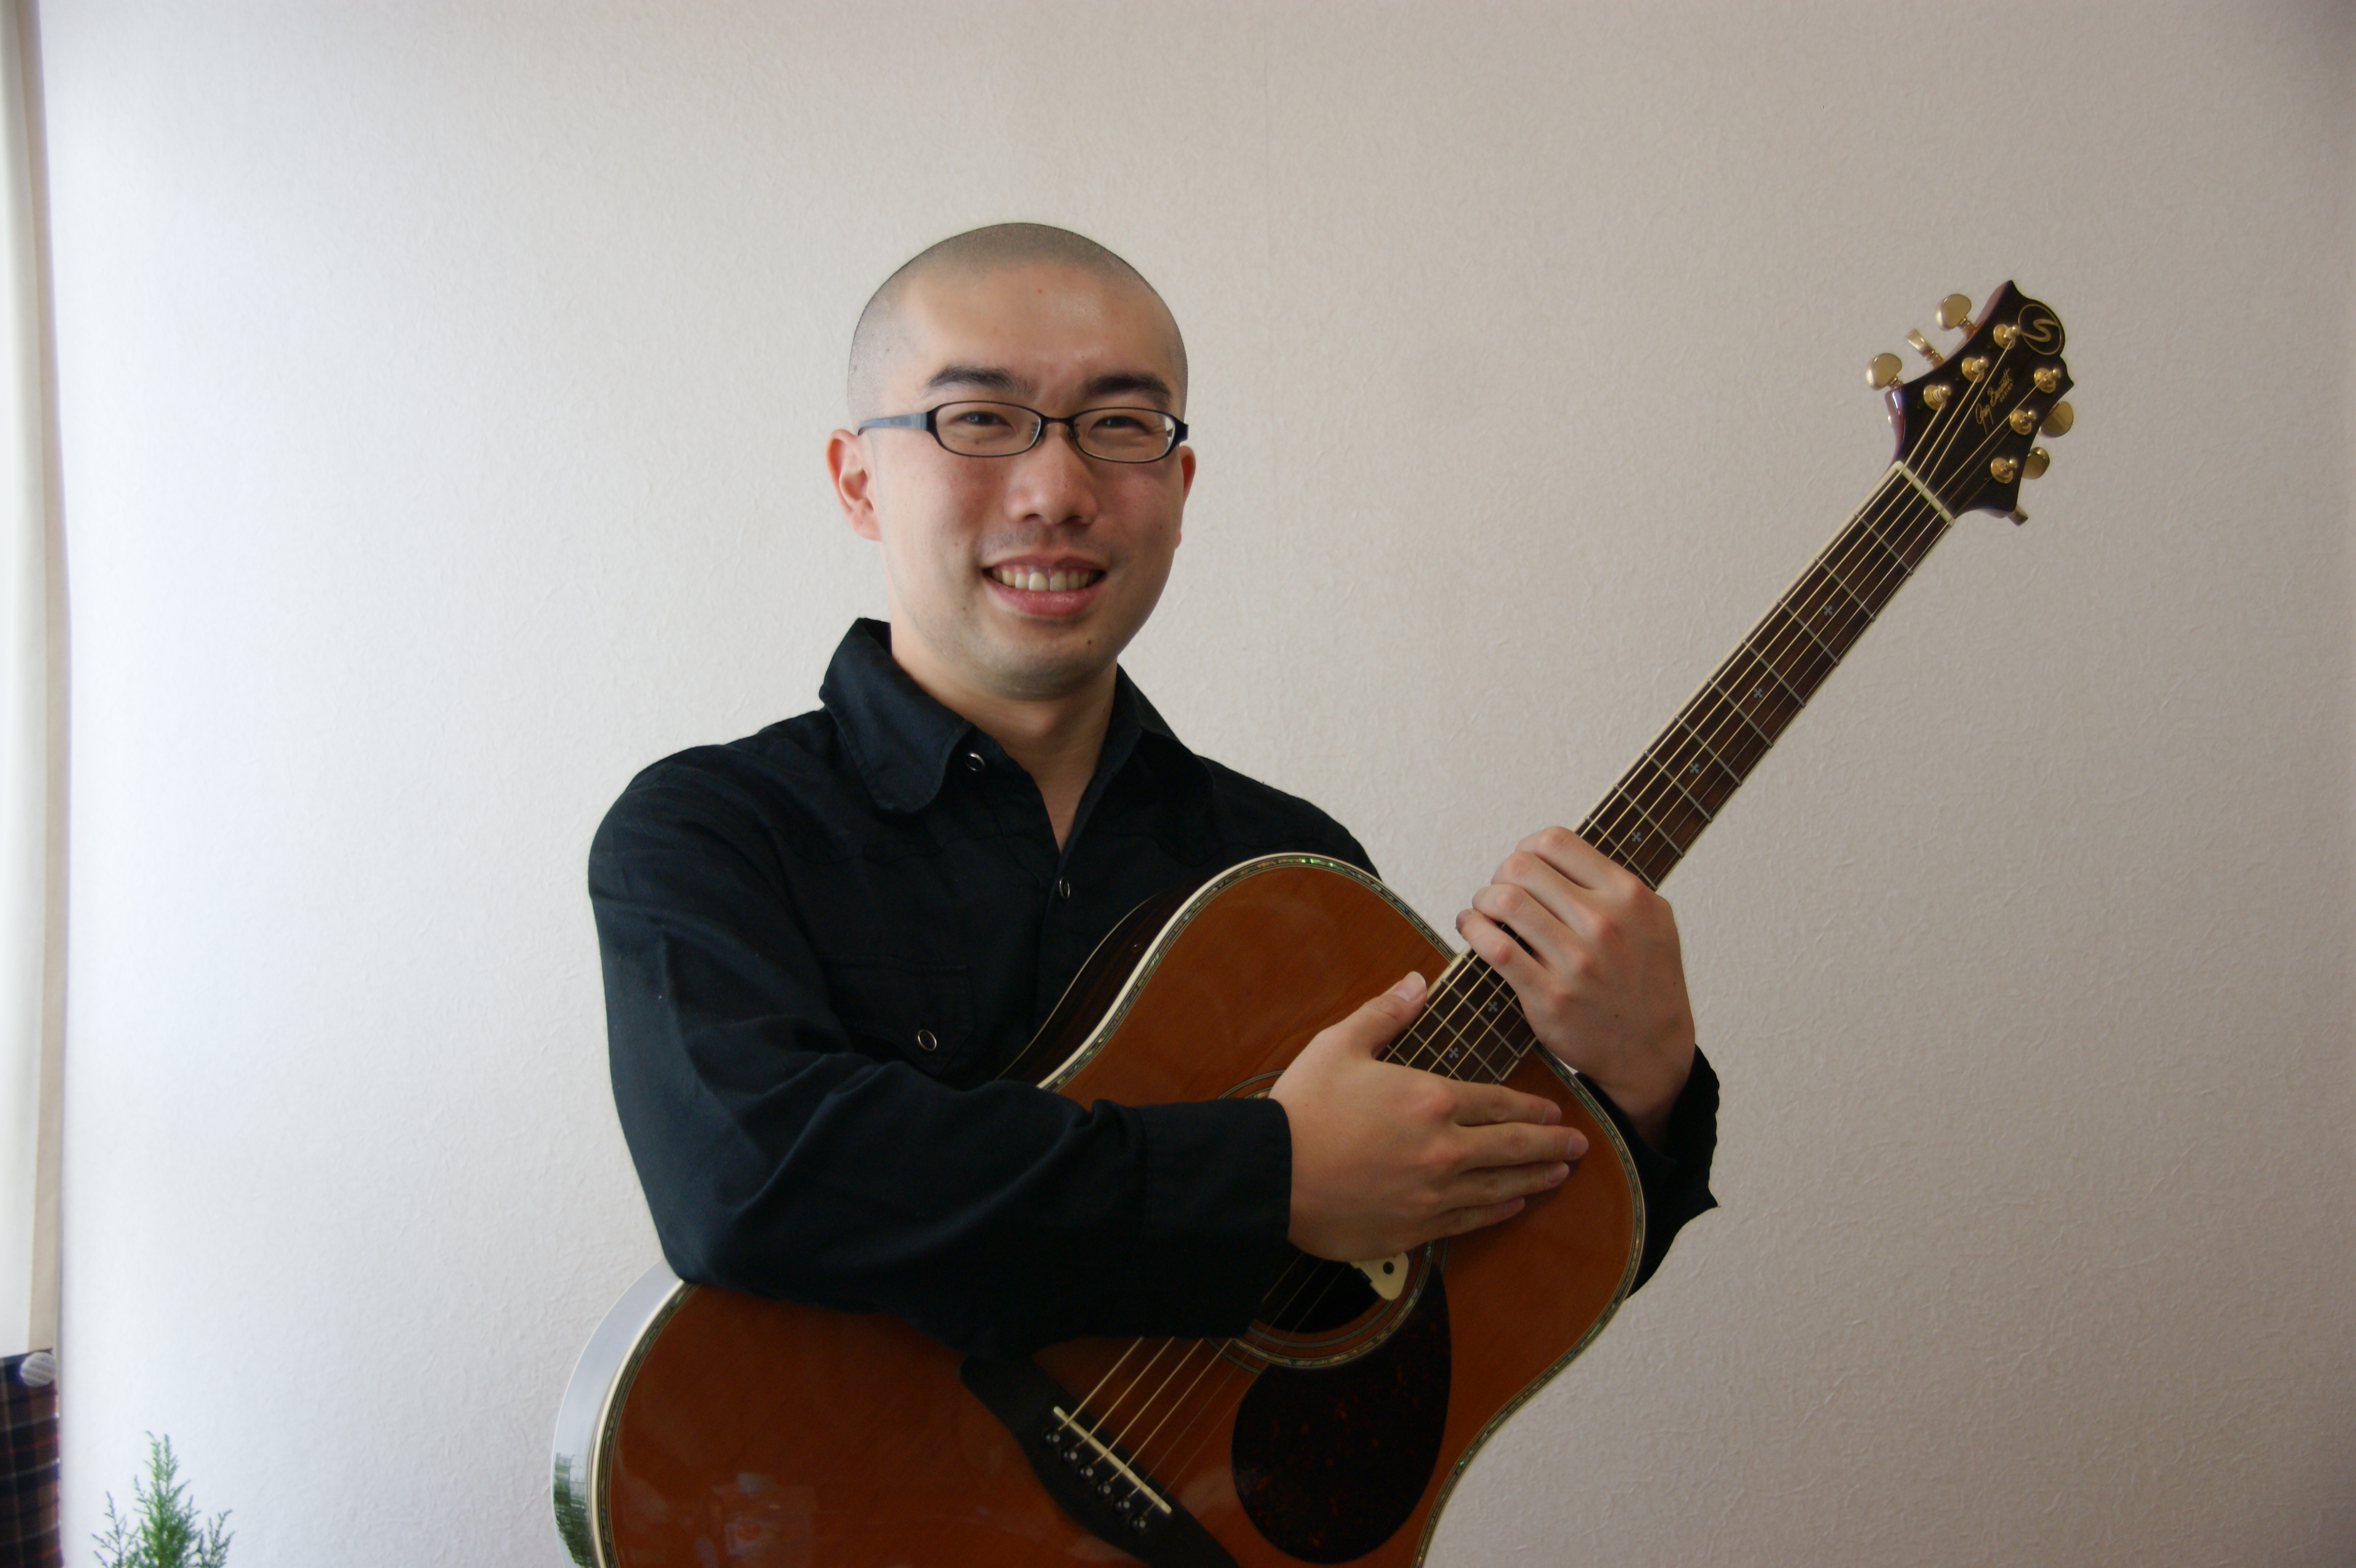 [https://www.shimamura.co.jp/shop/makuhari/lesson-info/20200914/5535:title=] *ギター教室、ウクレレ教室 火曜日に増設致しました！ 幅広い年齢層に人気のギターとウクレレ。この度火曜日に教室を増設となりました！]]キッズギター […]